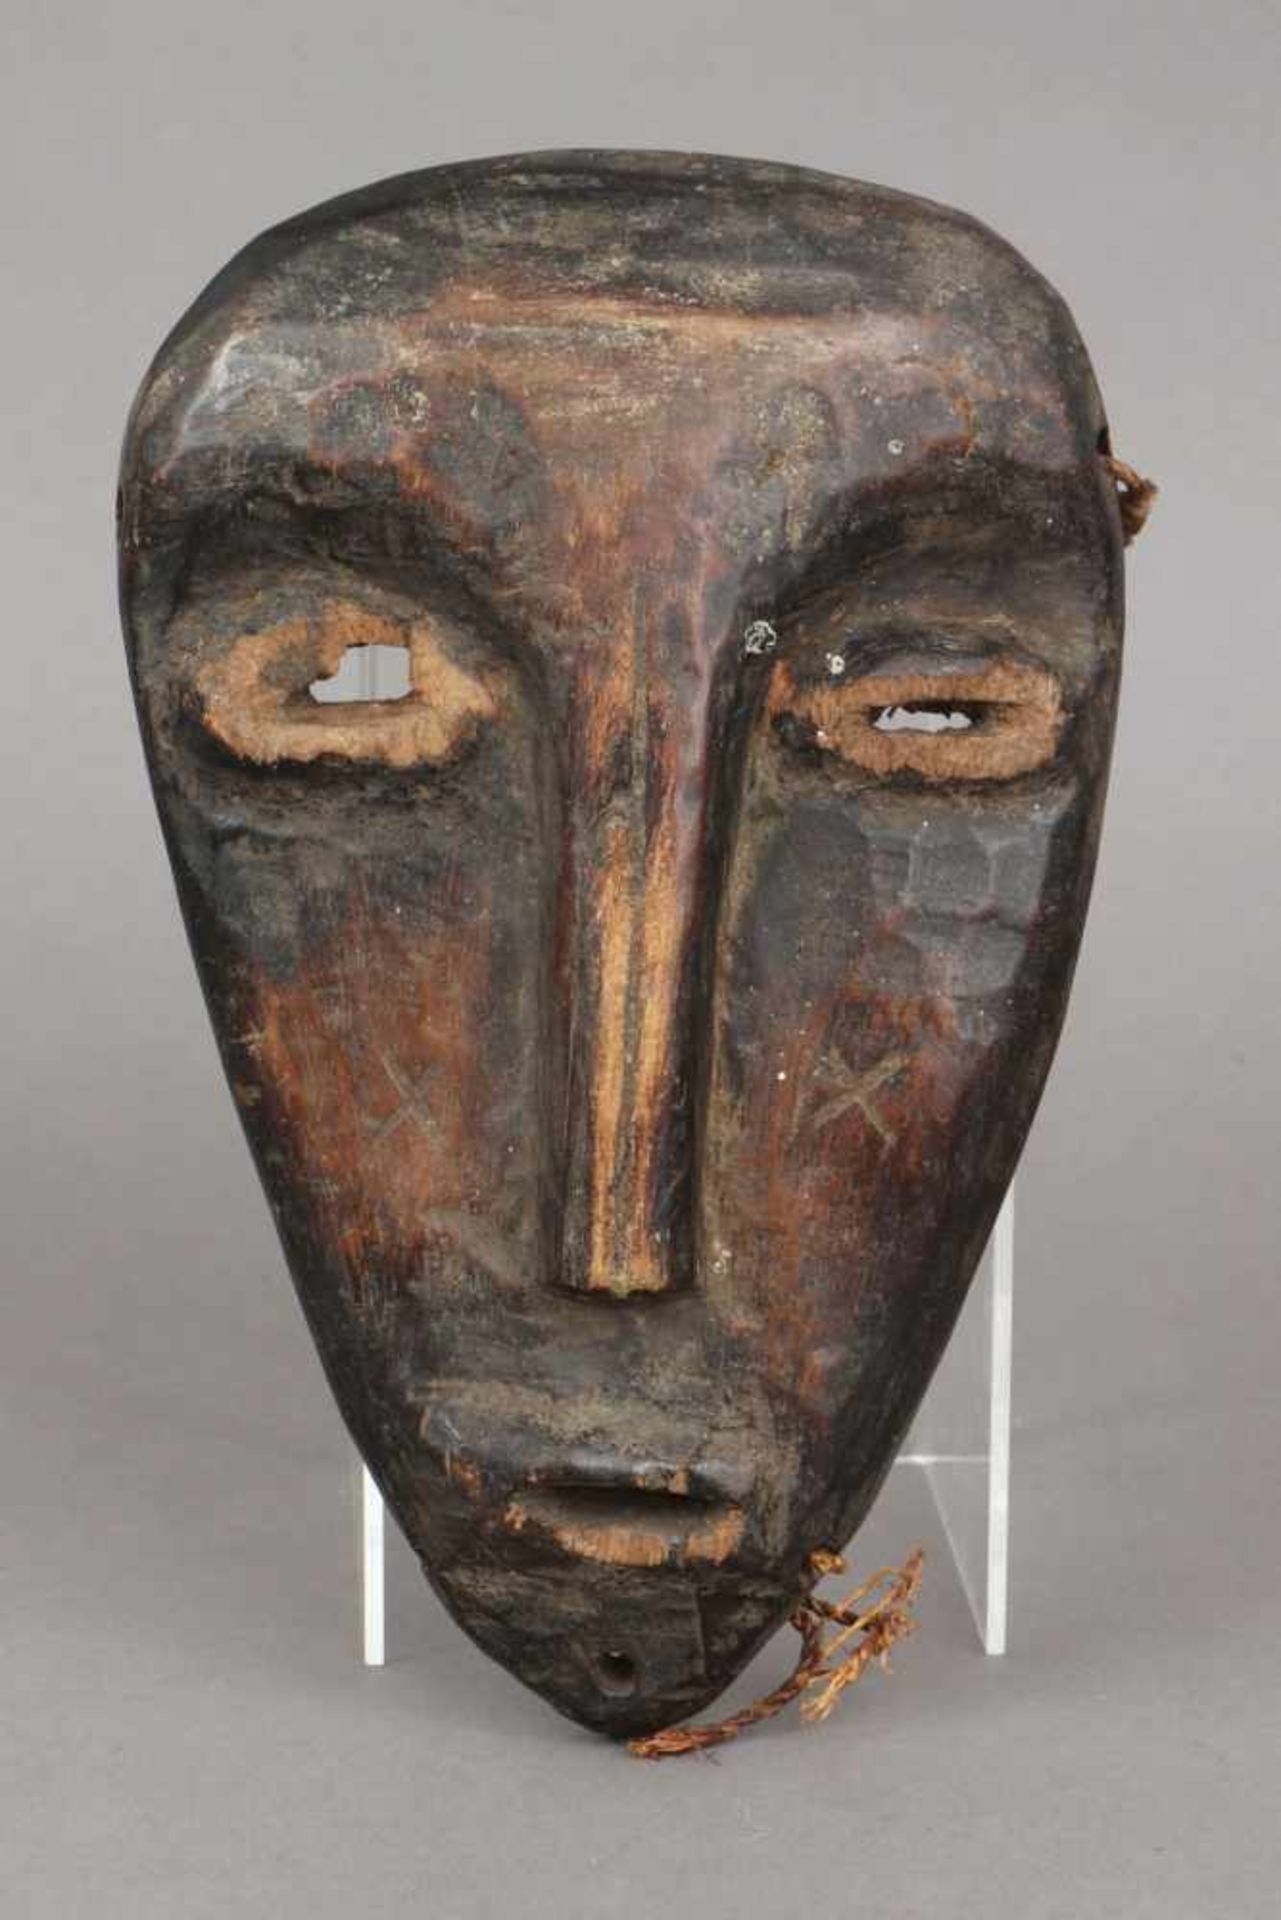 Afrikanische Tanzmaske, wohl Dogon, Mali dunkel patiniertes Holz, geschnitzt, schlankes Gesicht mit